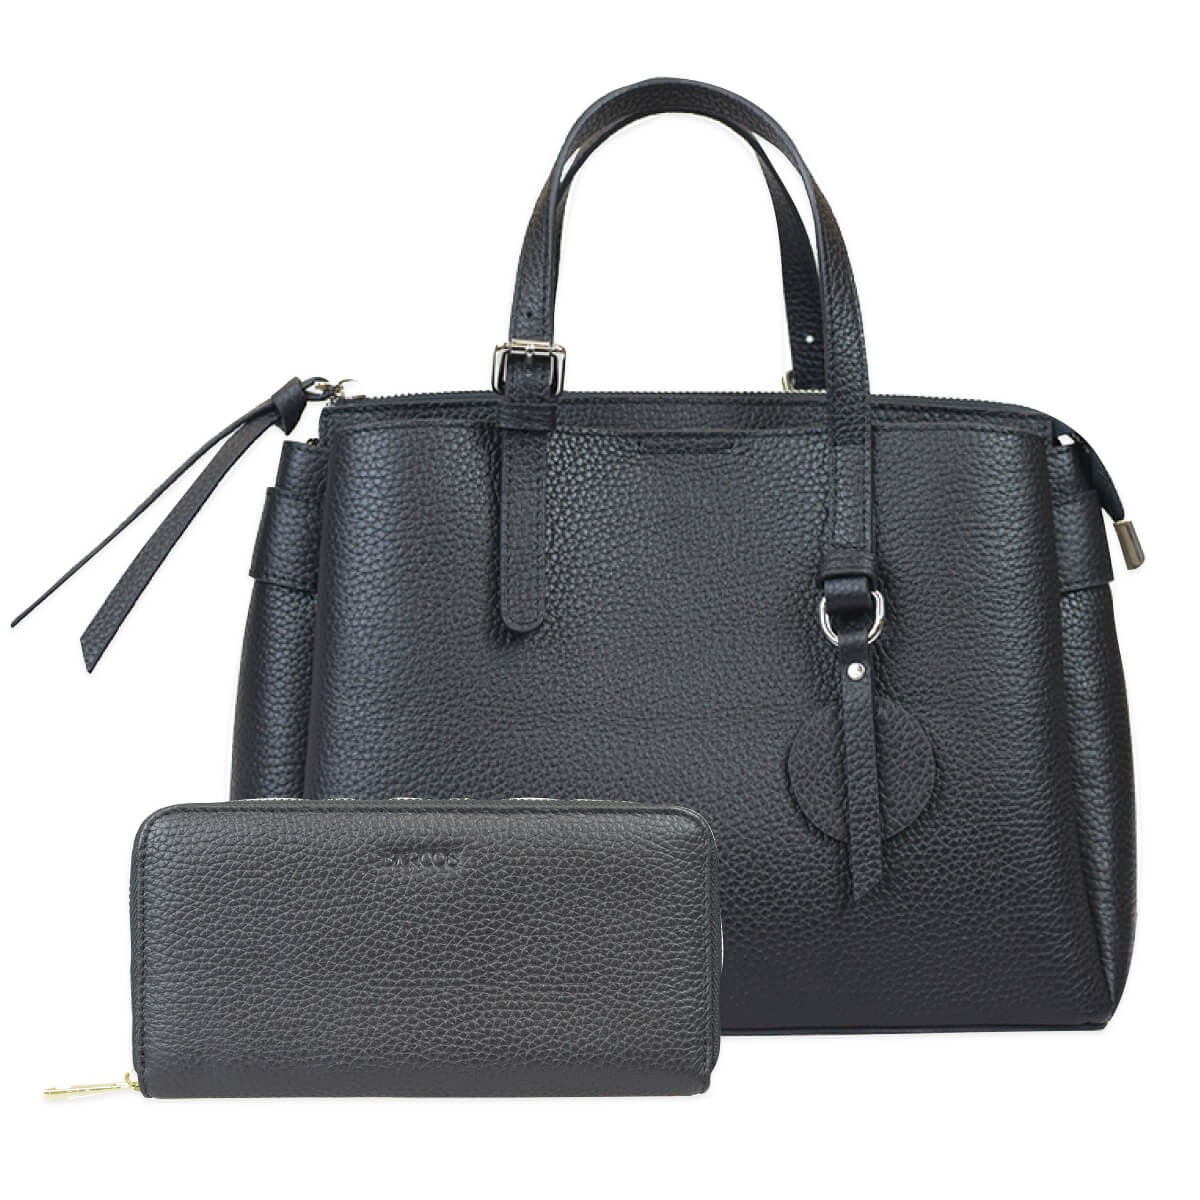  комплект товар BARCOS shrink кожа ручная сумочка &amp; кошелек elegant комплект женский все 3 цвет ONESIZE bar kos